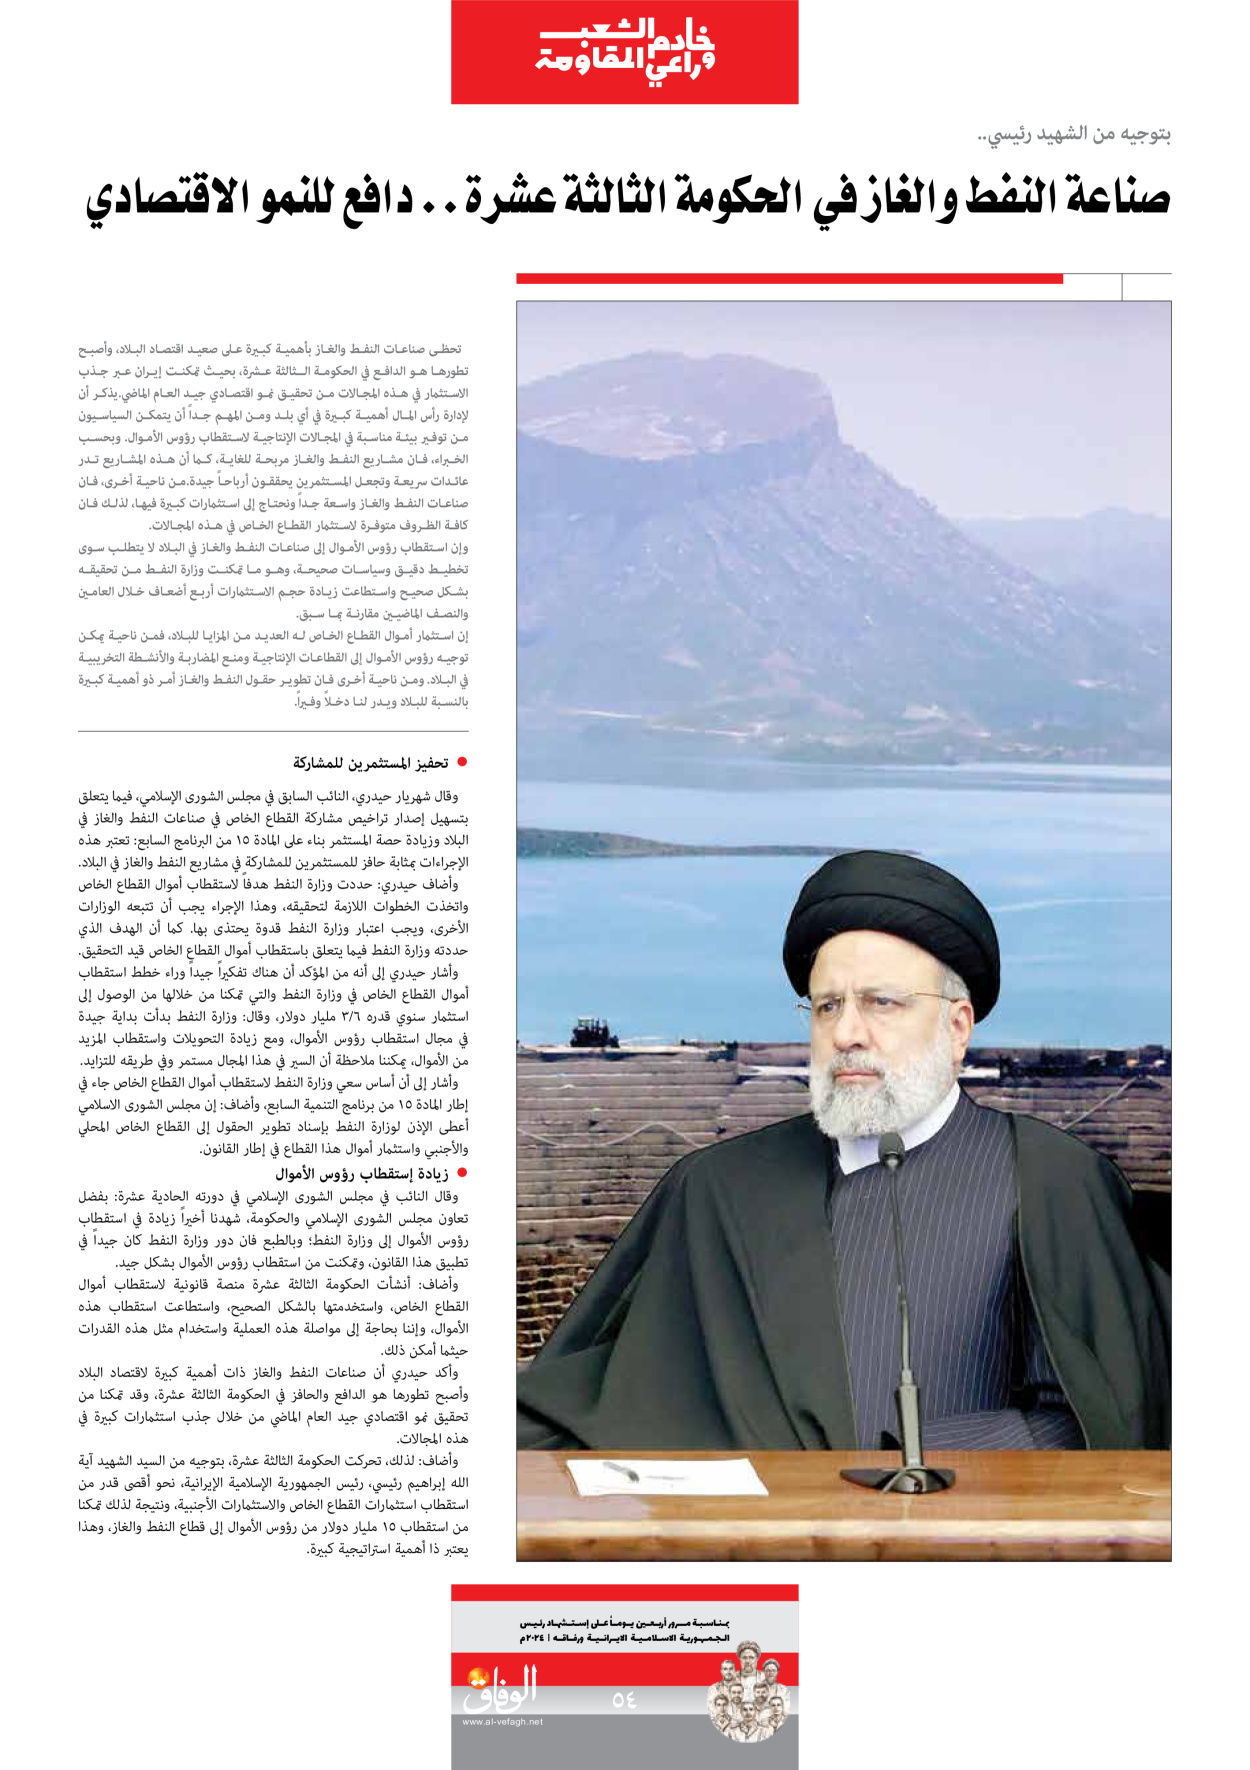 صحیفة ایران الدولیة الوفاق - ملحق ویژه نامه چهلم شهید رییسی - ٢٩ يونيو ٢٠٢٤ - الصفحة ٥٤